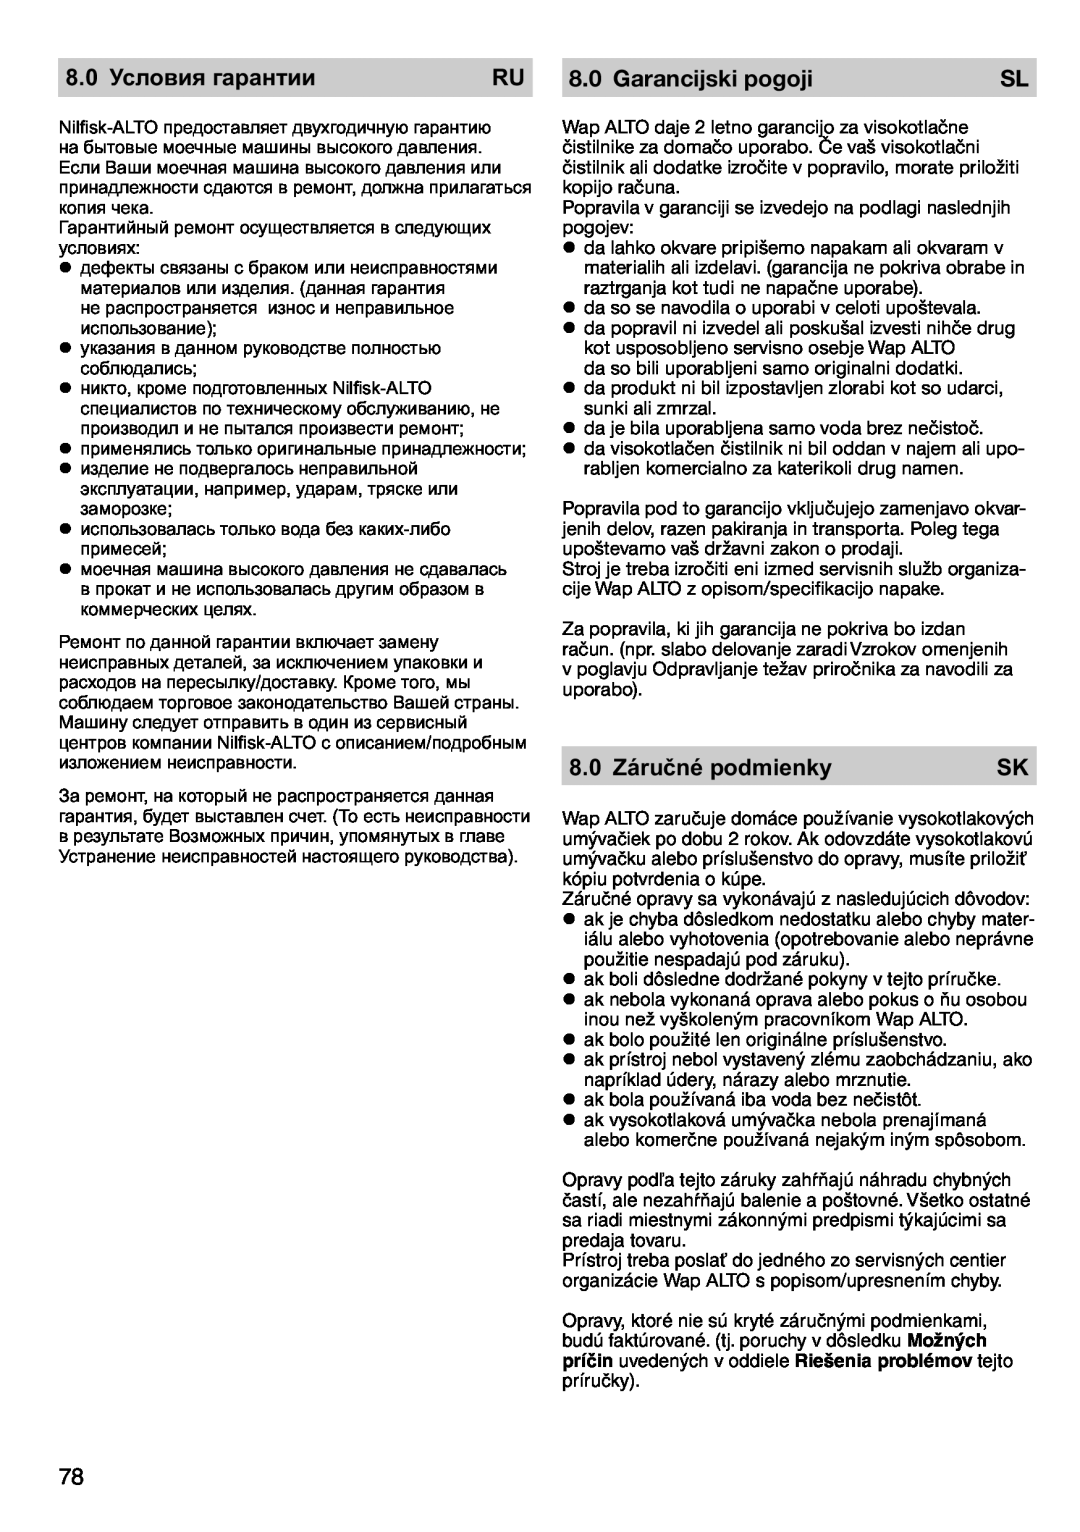 Nilfisk-ALTO POSEIDON 2-21 instruction manual 8.0 Условия гарантии, Garancijski pogoji, 8.0 Záručné podmienky 